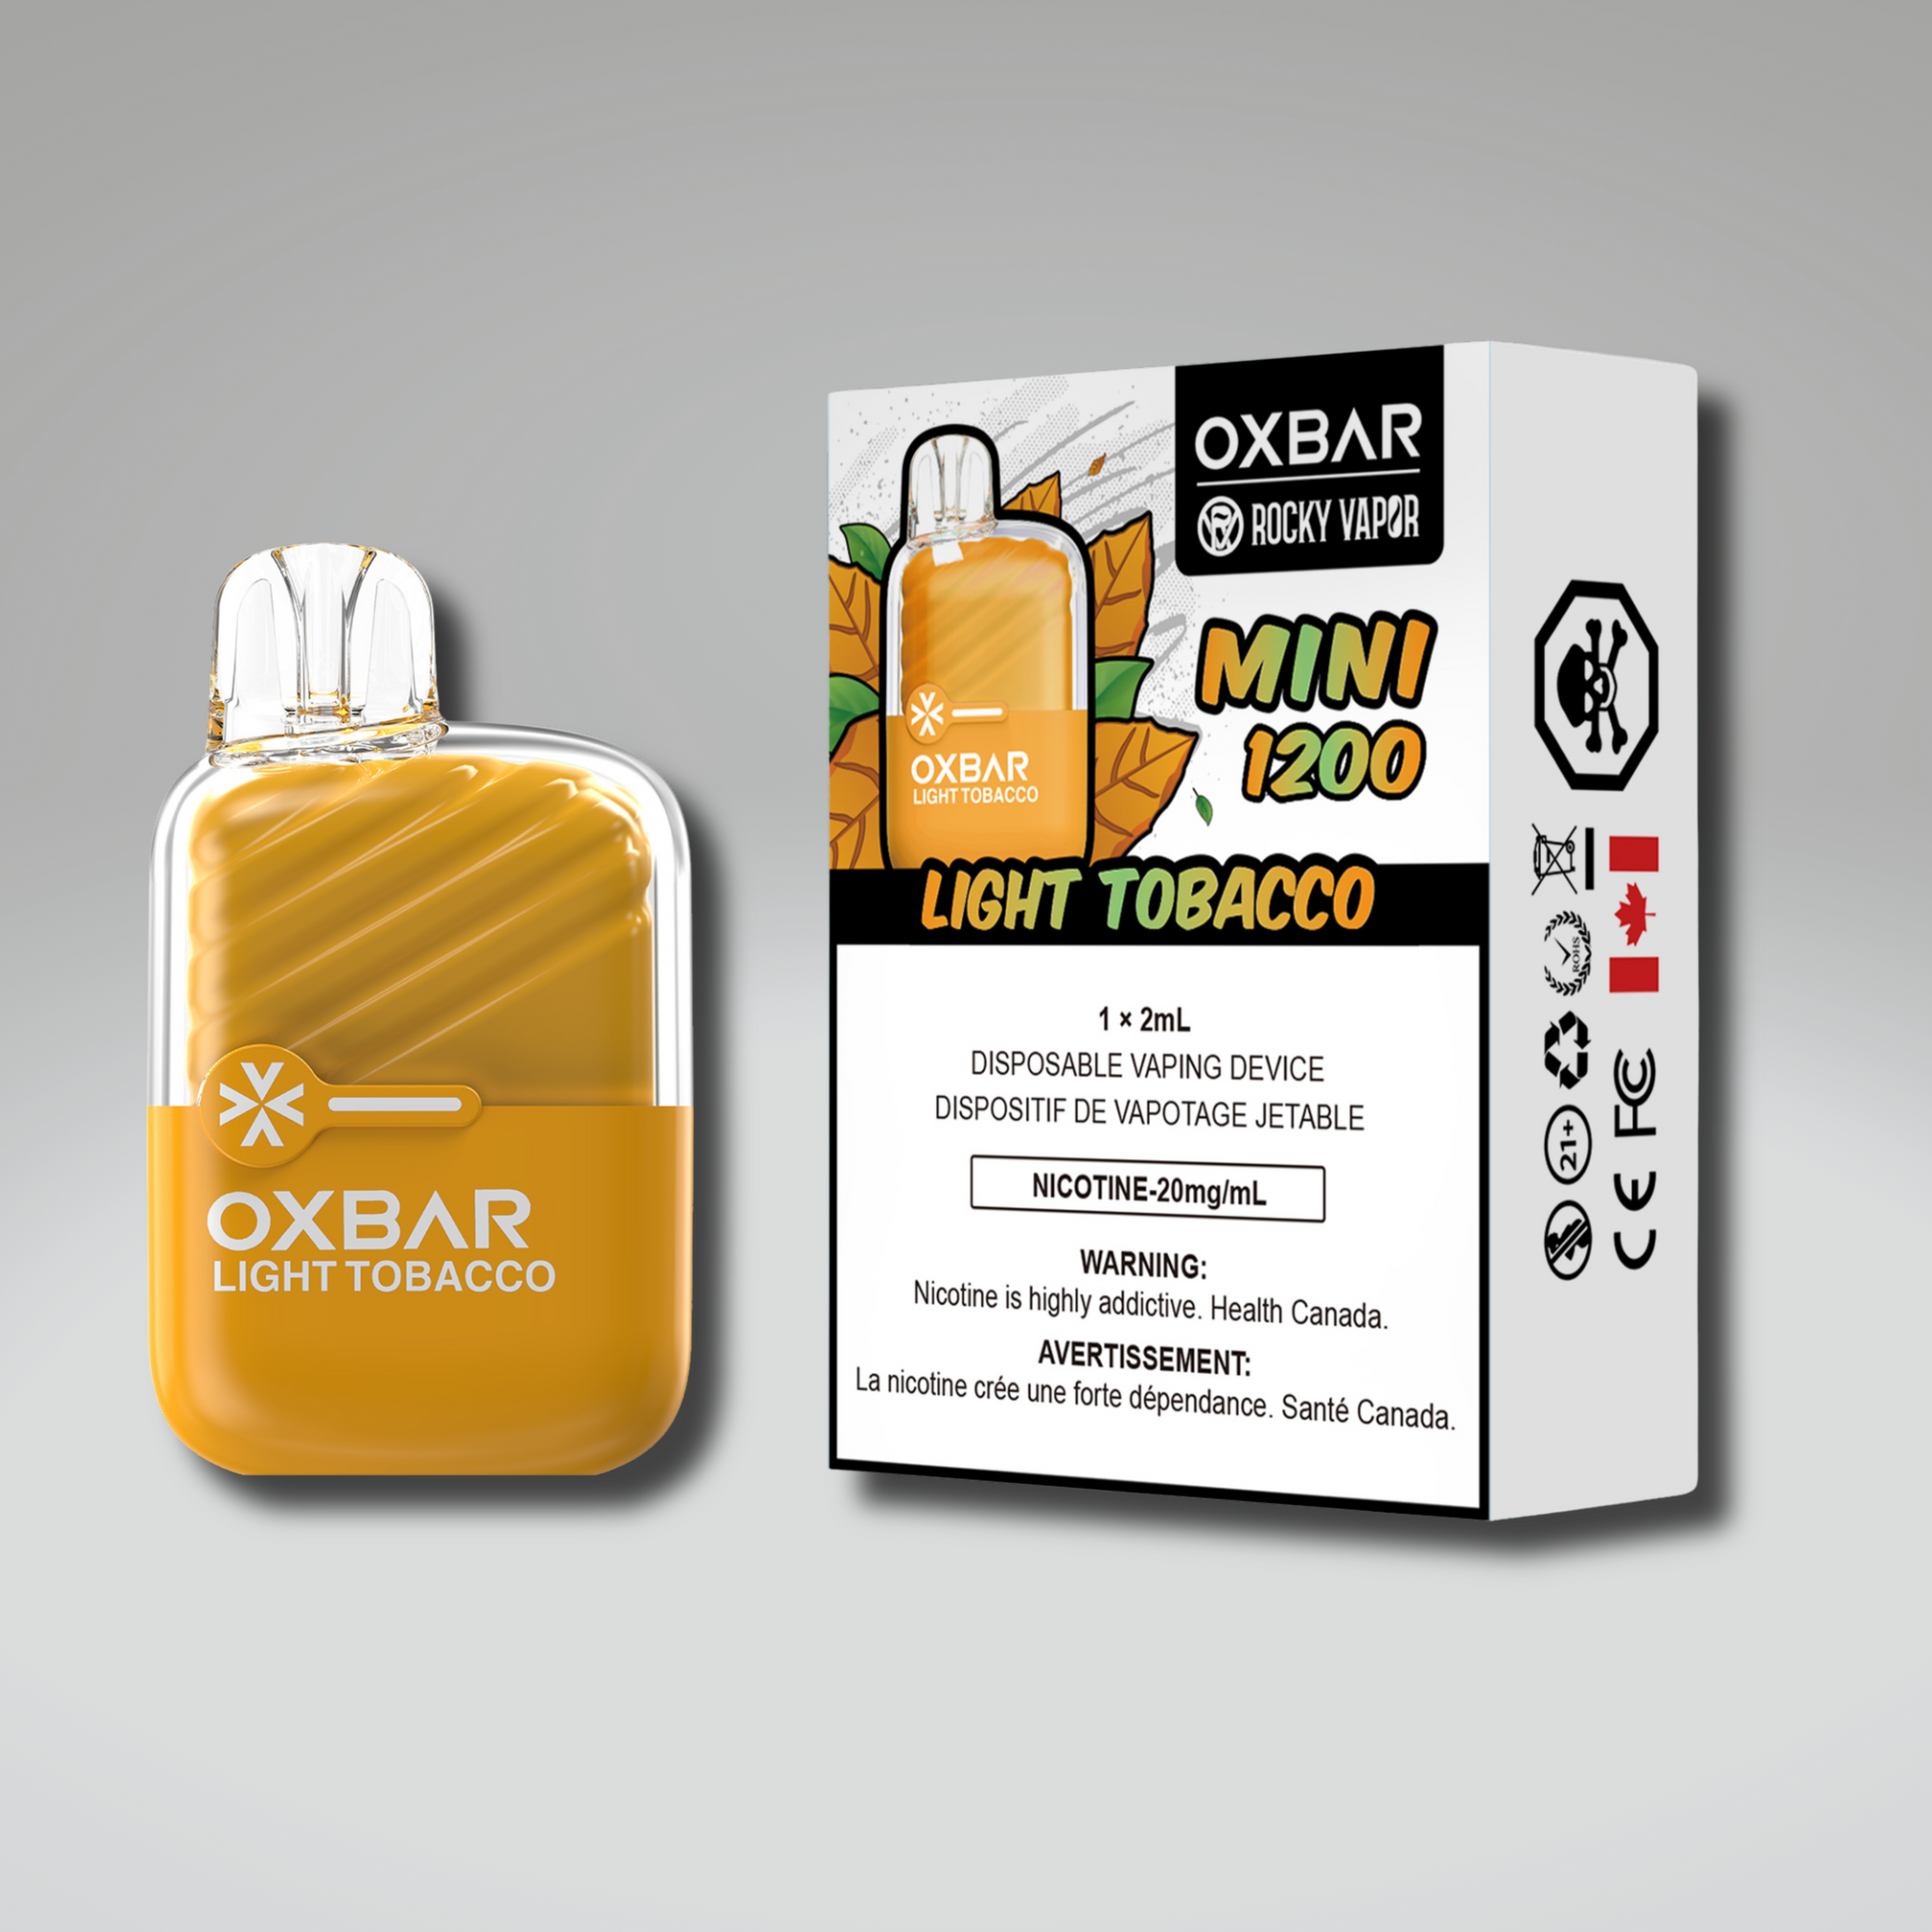 ROCKY VAPOR OXBAR MINI 1200 (5PC/CARTON)